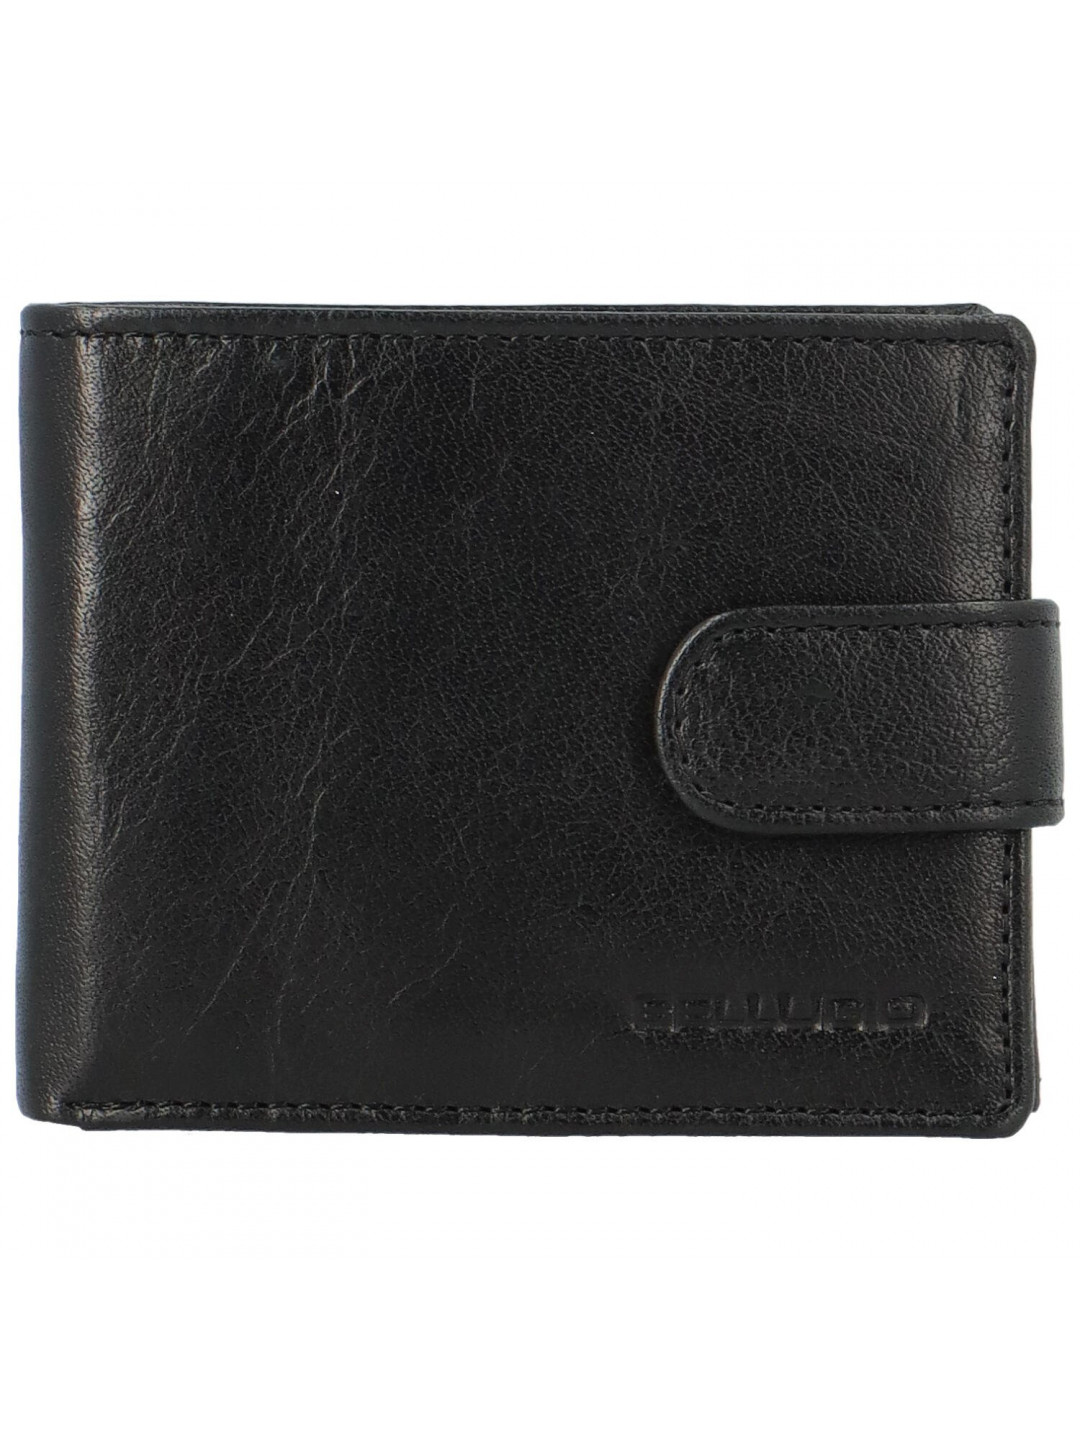 Pánská kožená peněženka na šířku Bellugio Bodhi černá